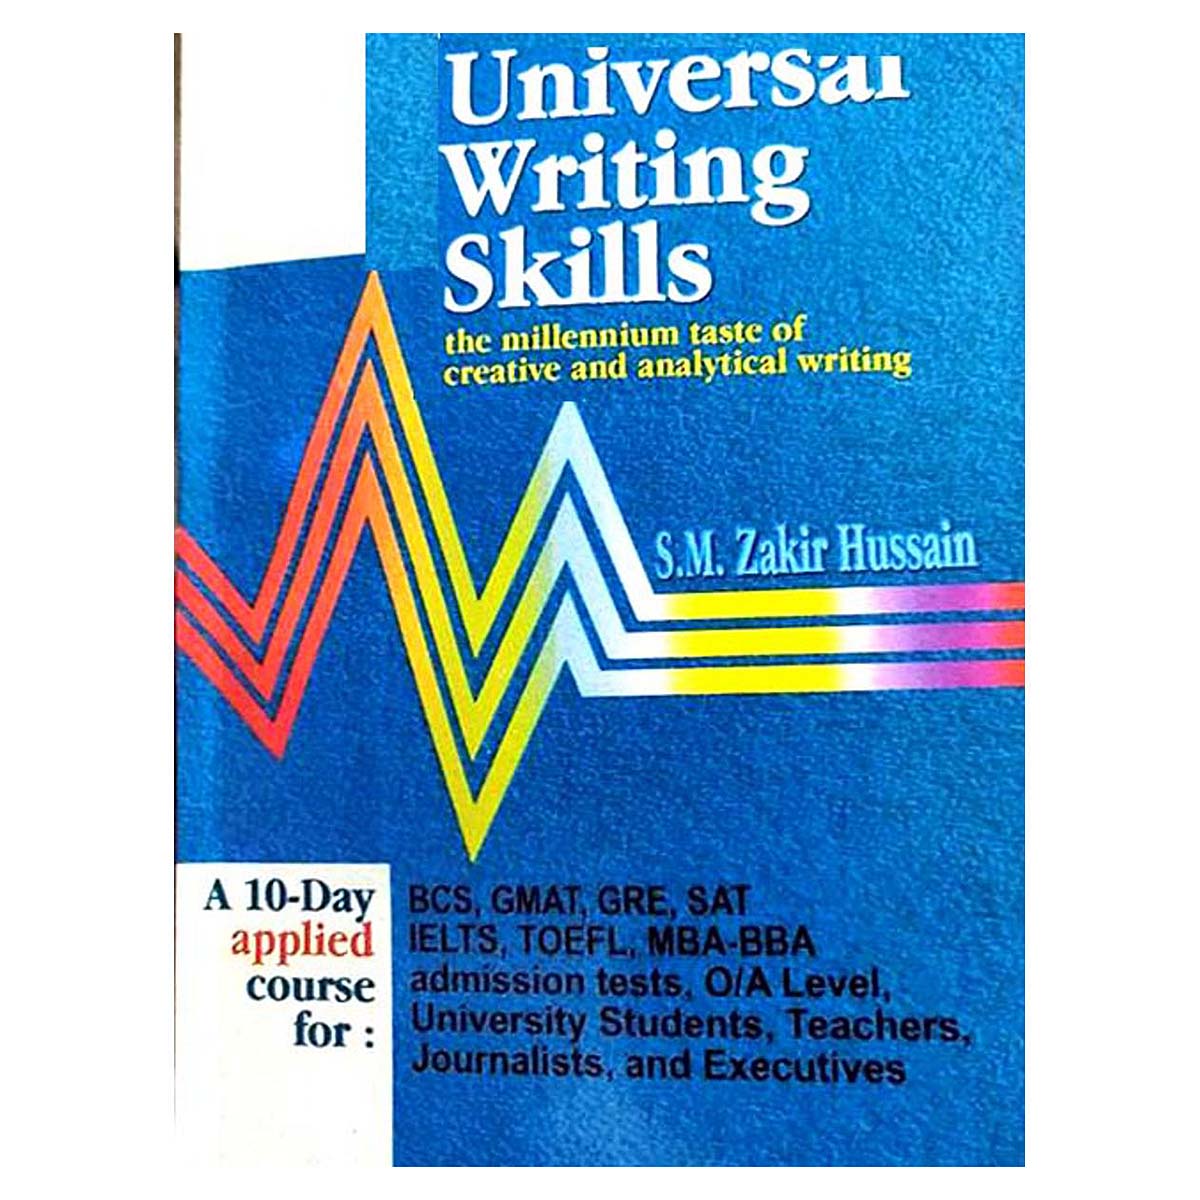 Universal Writing Skills